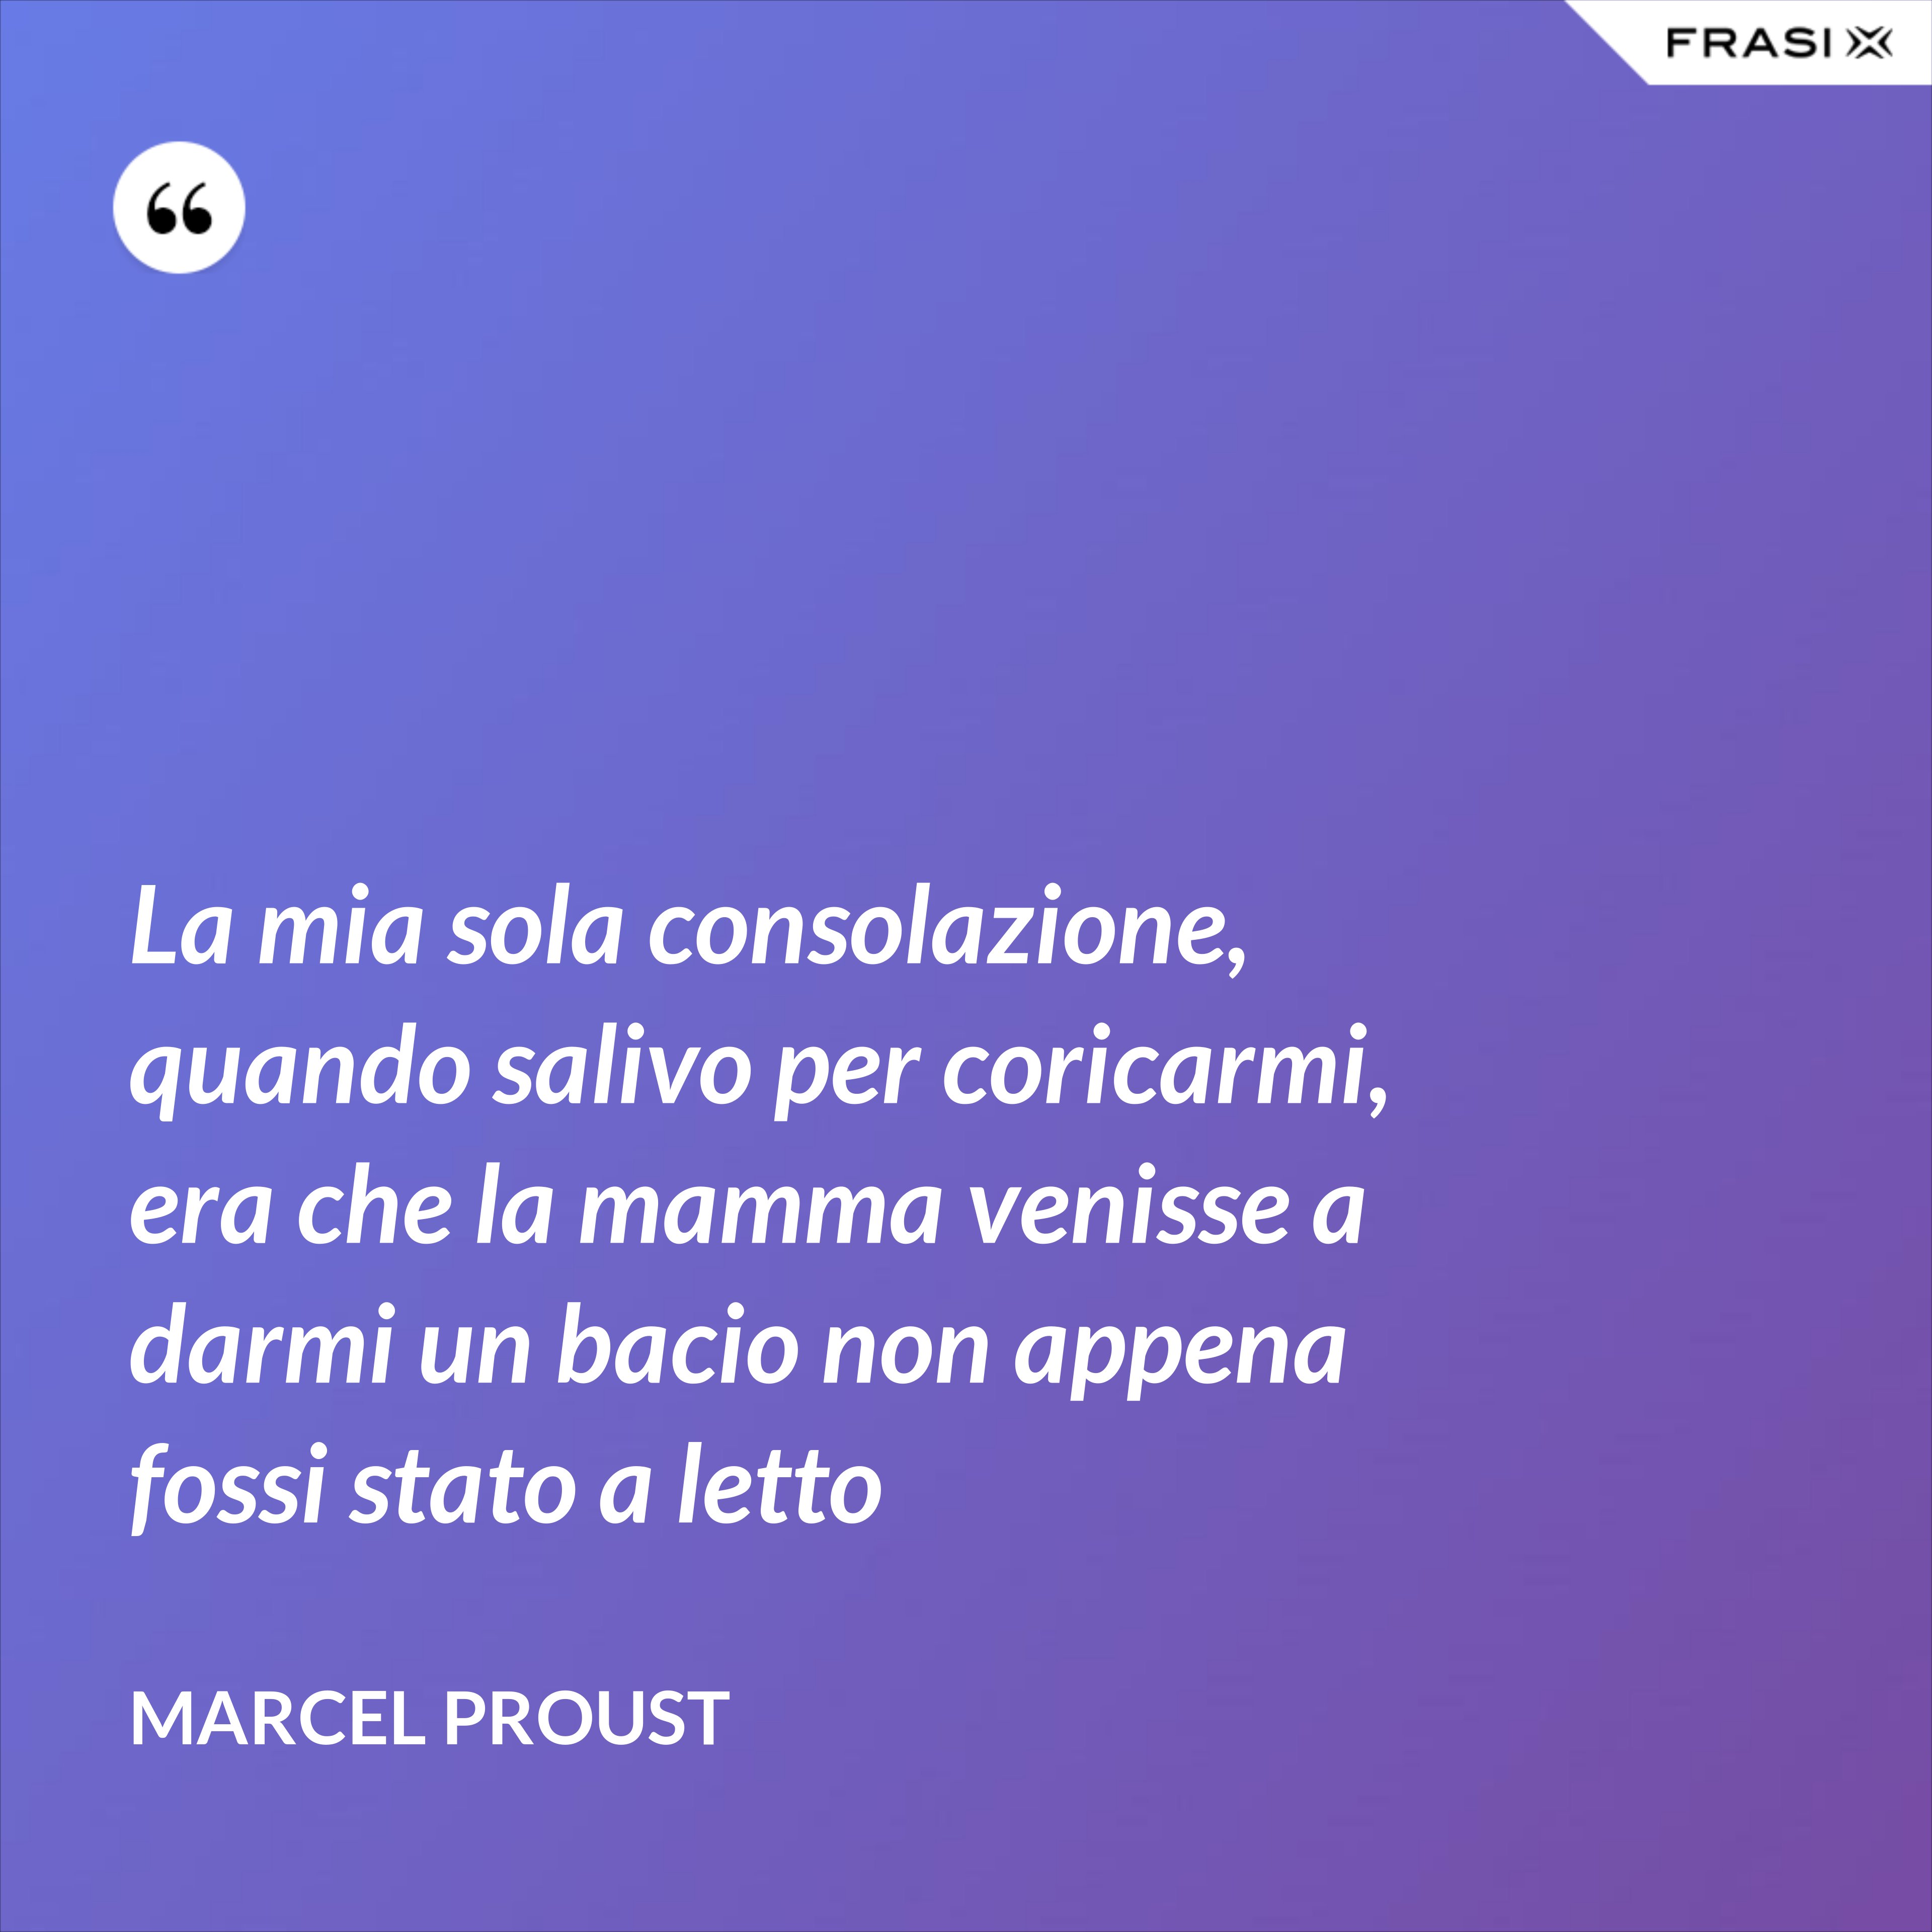 La mia sola consolazione, quando salivo per coricarmi, era che la mamma venisse a darmi un bacio non appena fossi stato a letto - Marcel Proust